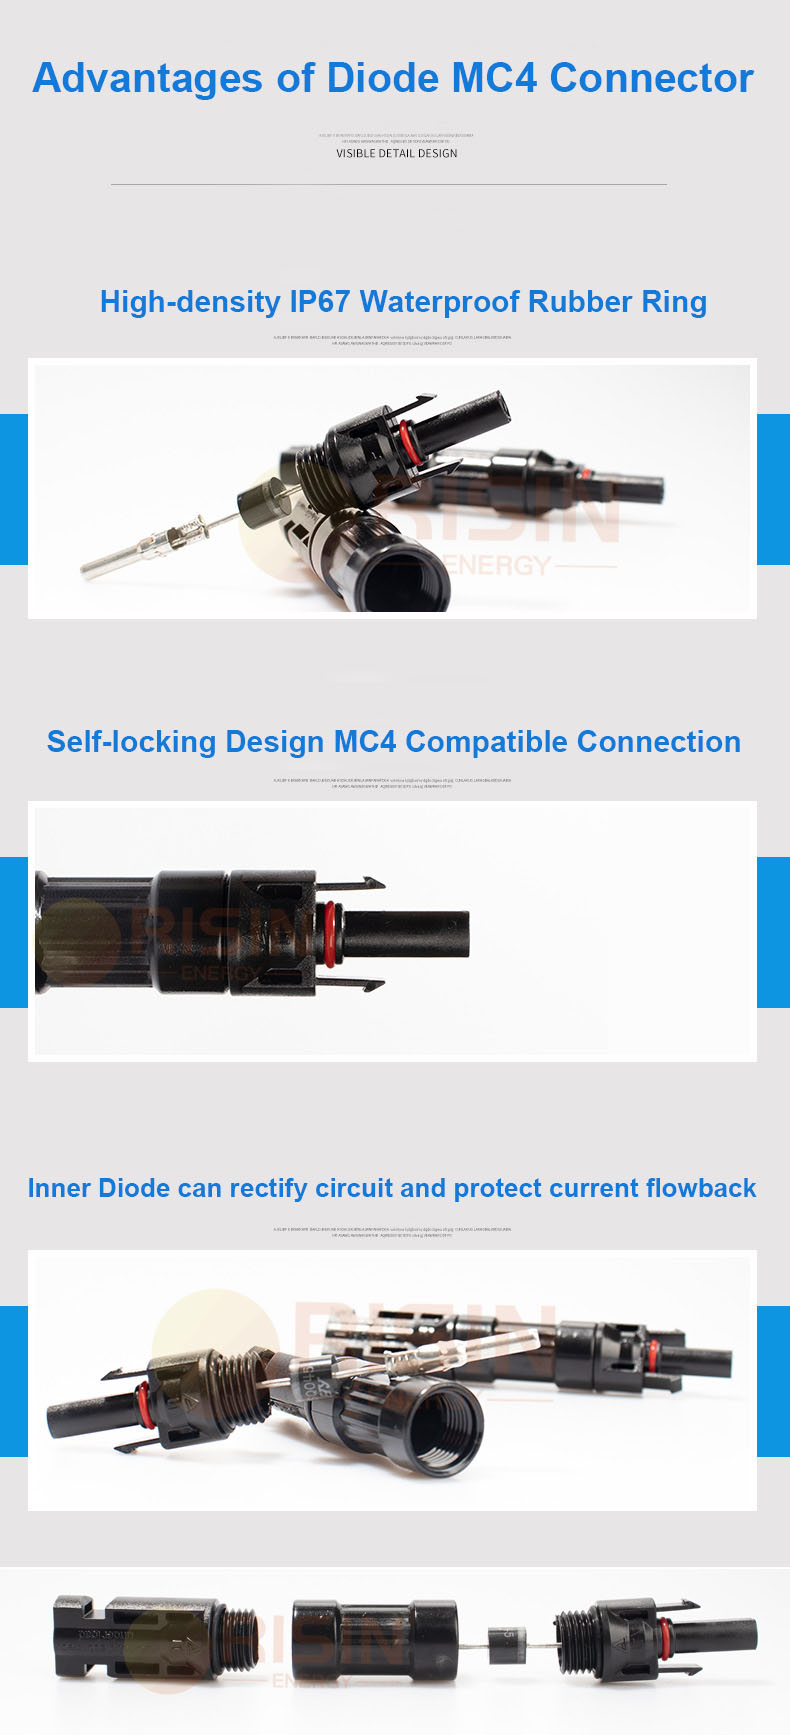 Přednosti diody MC4